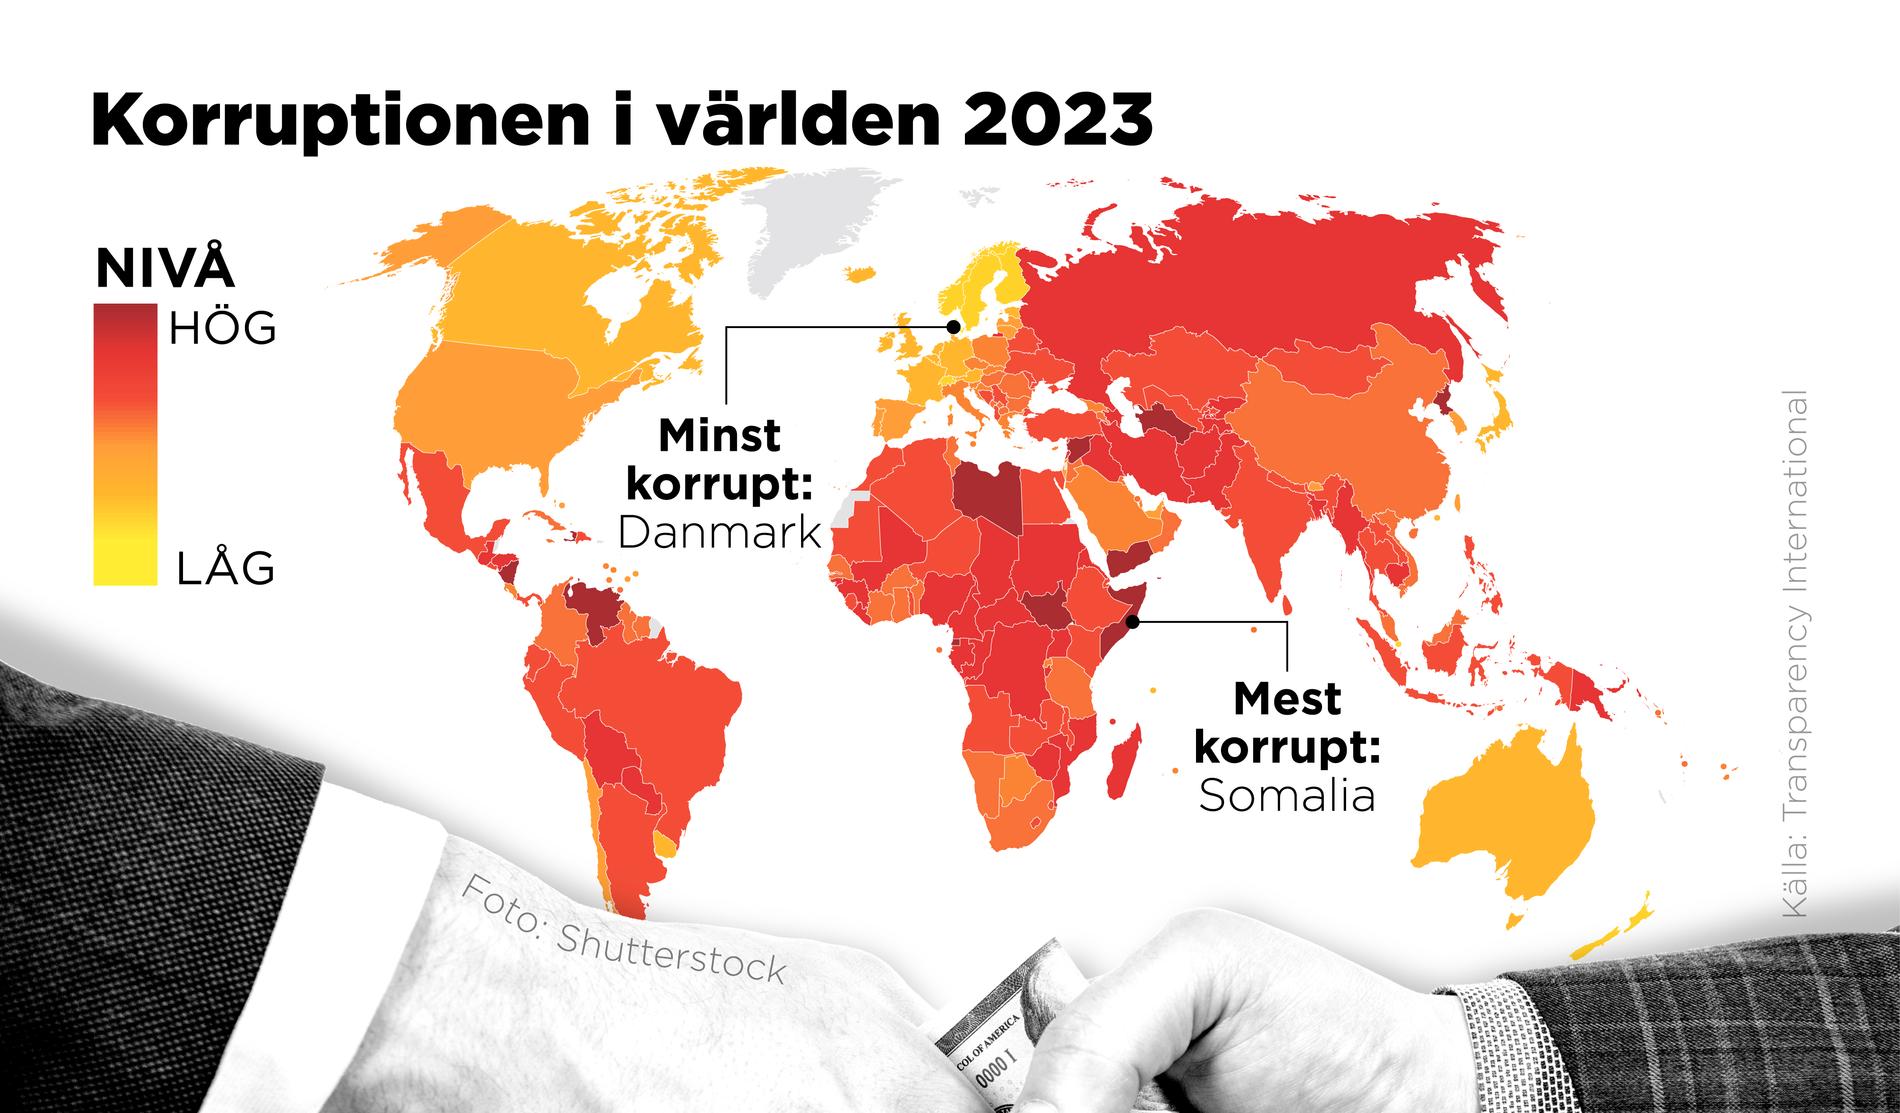 Danmark är det minst korrupta landet i världen i en ny rapport från Transparency International. Det mest korrupta landet är Somalia. Sverige faller från 4:e till 6:e plats.